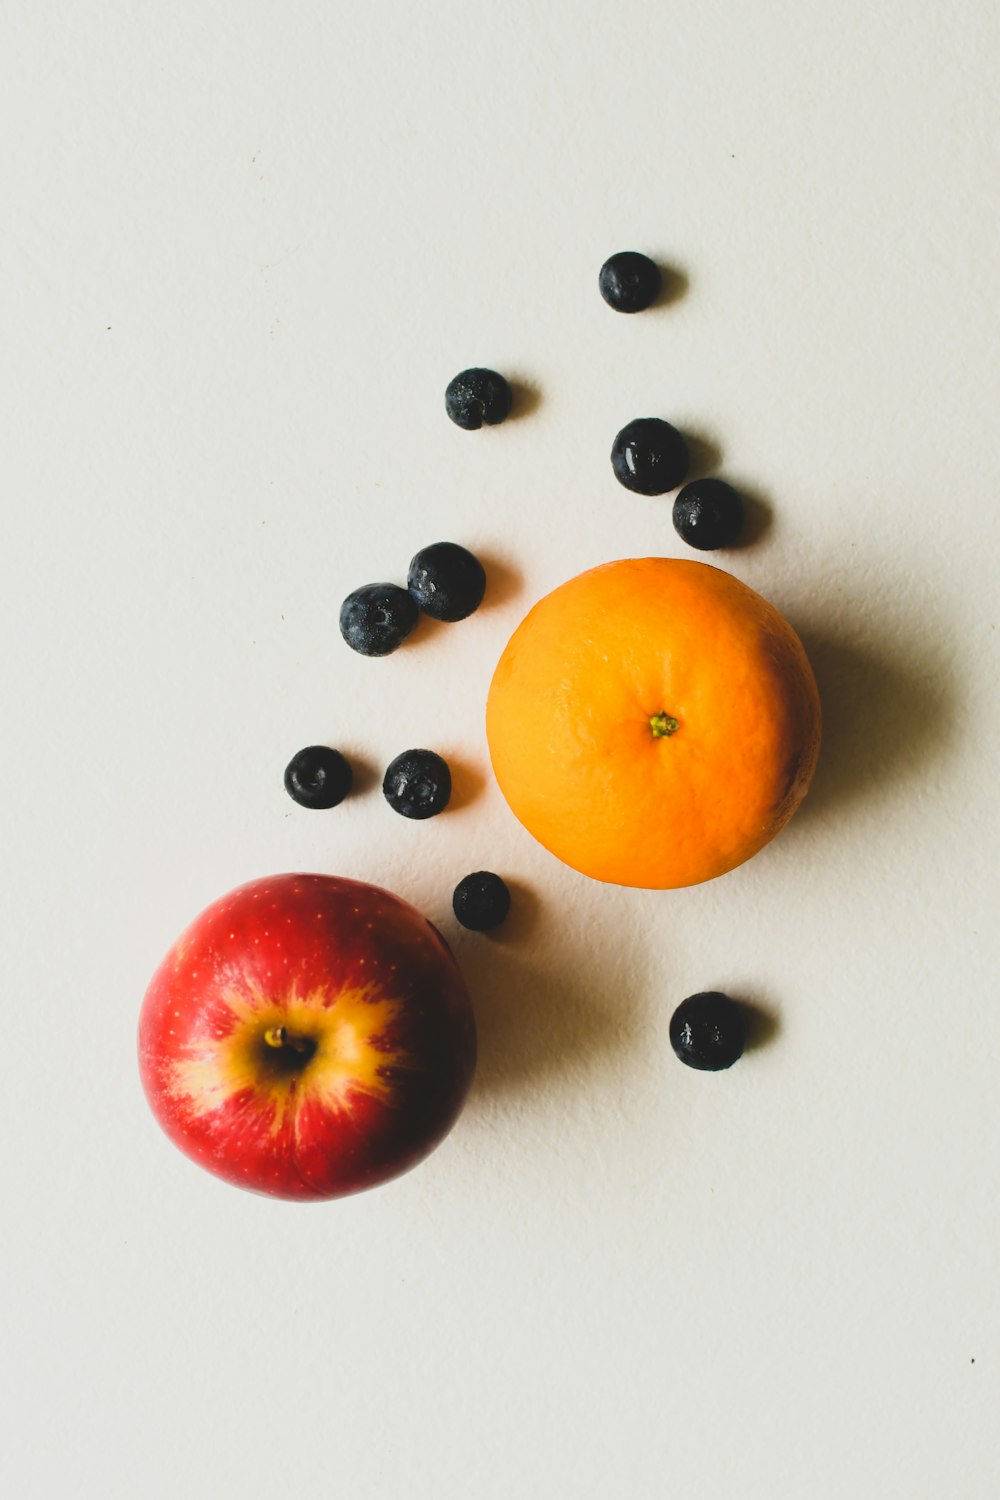 fruta anaranjada junto a cuentas blancas y negras